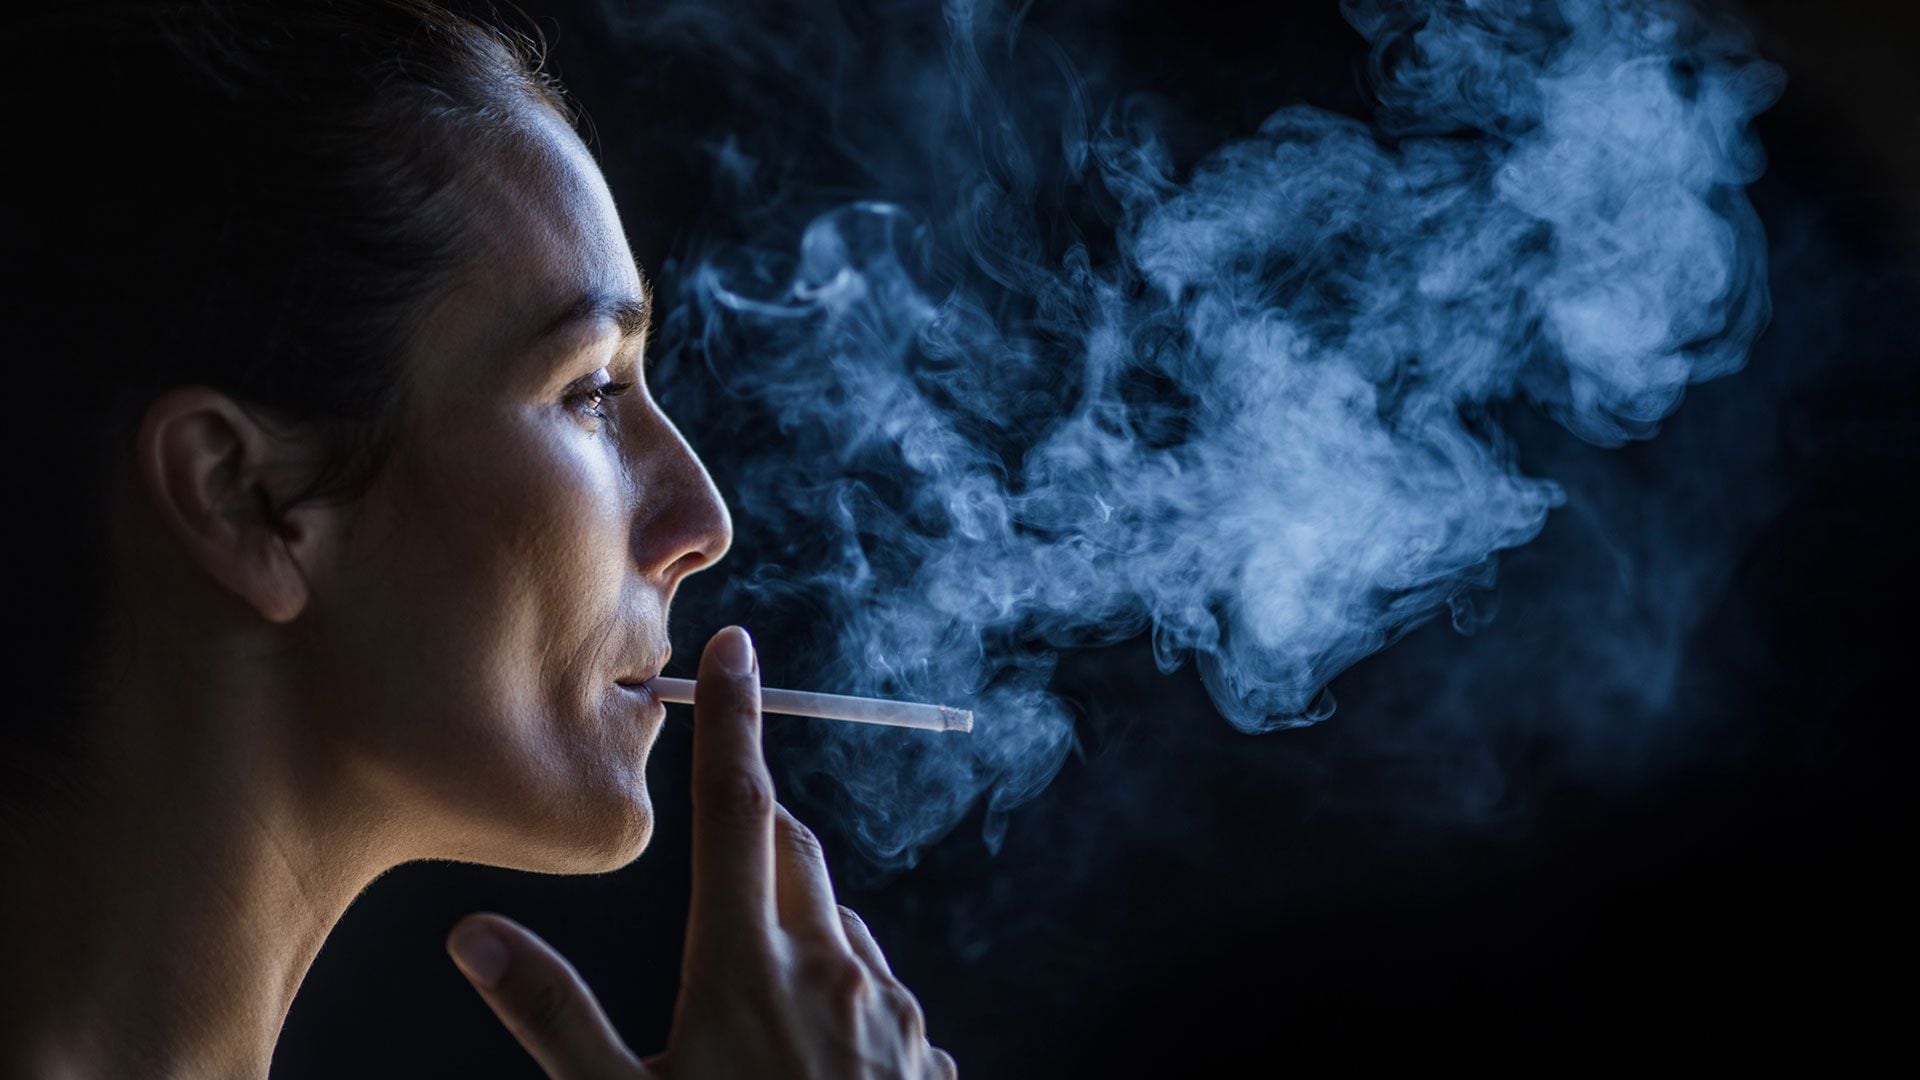 La exposición al humo de segunda mano puede ser imperceptible, pero sus efectos en la salud son reales y preocupantes
(Getty)